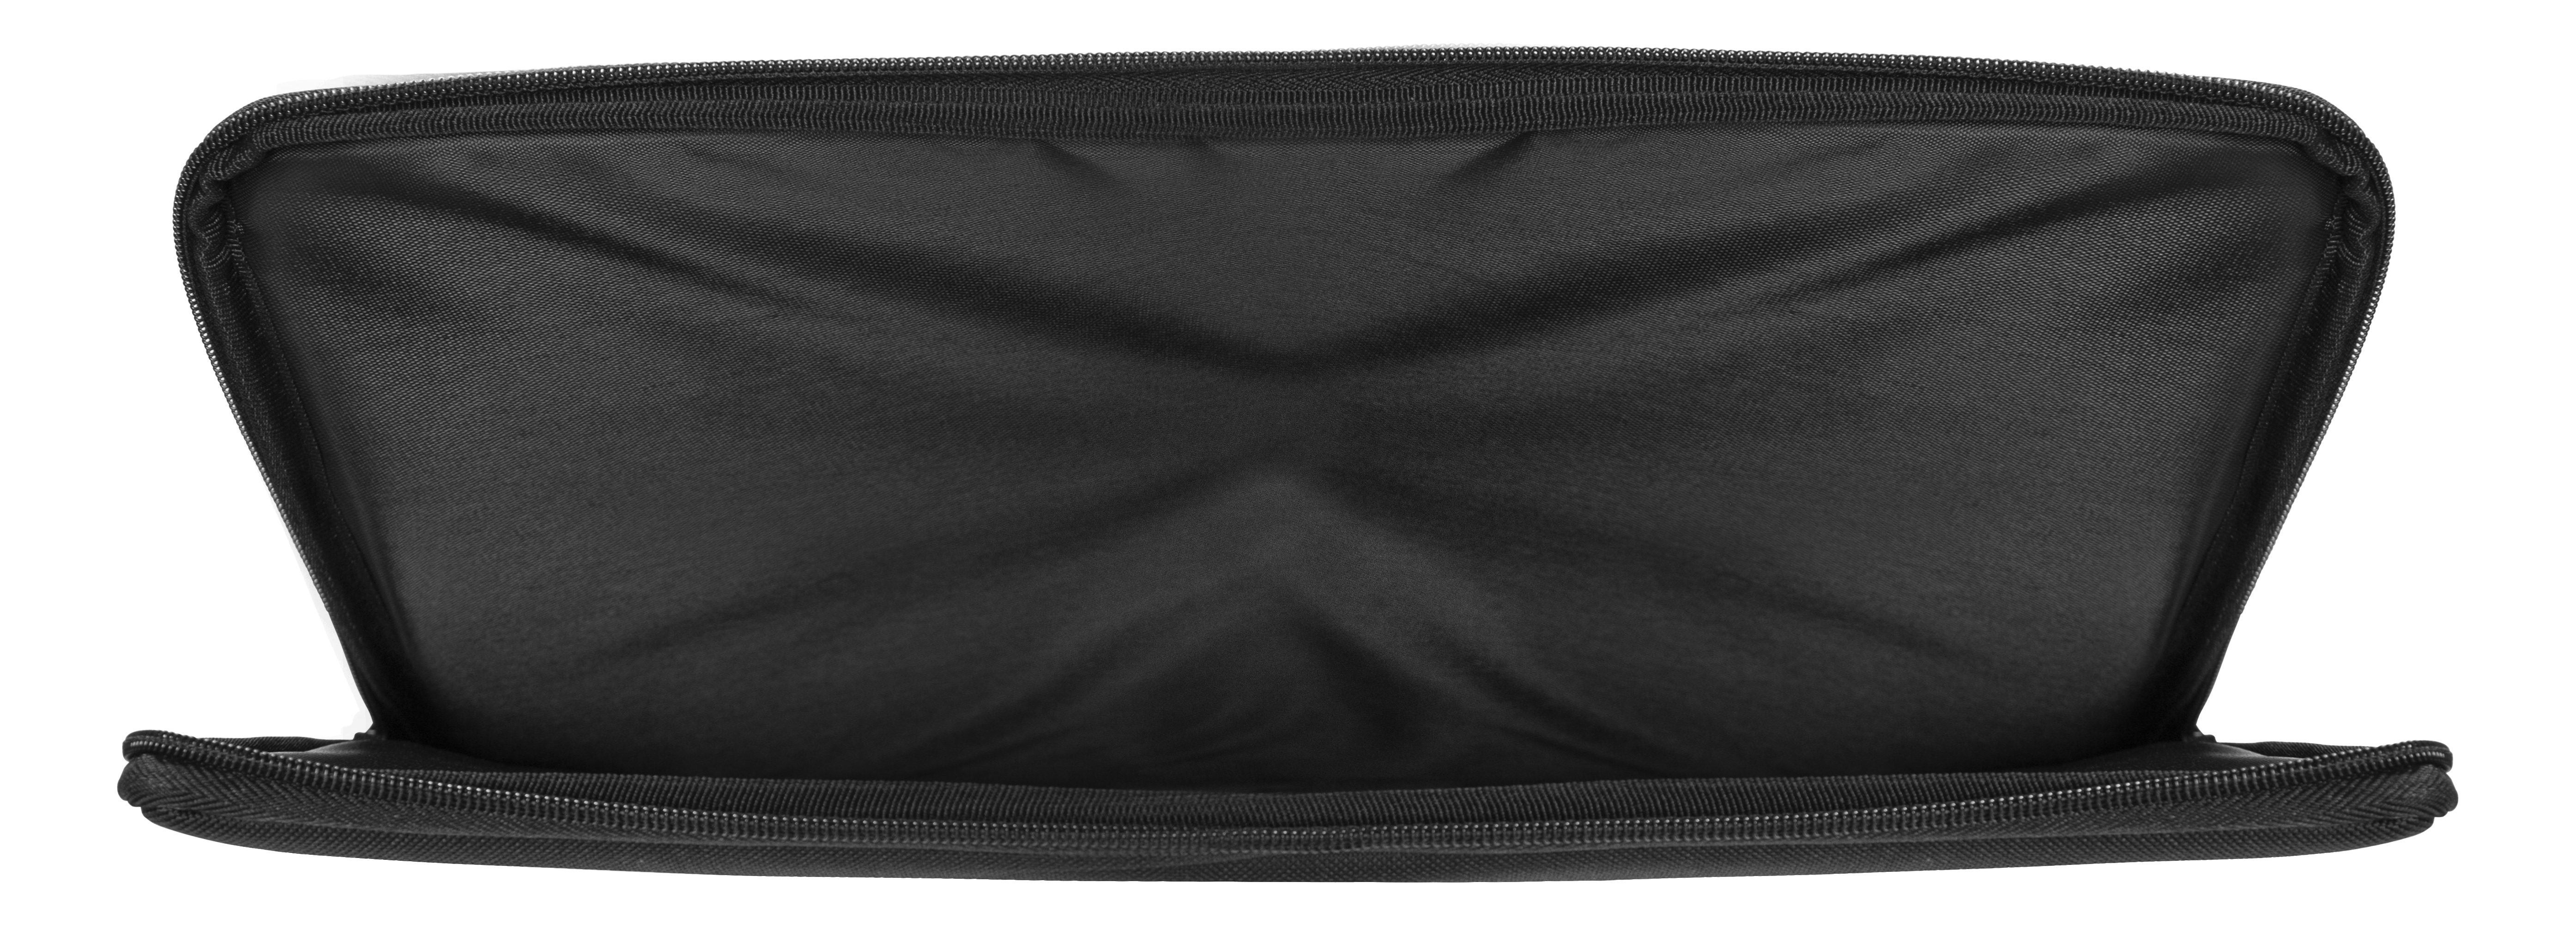 Notebooktasche DELTACO Verschiedene Universal Schwarz für Materialien, NV-902 Sleeve